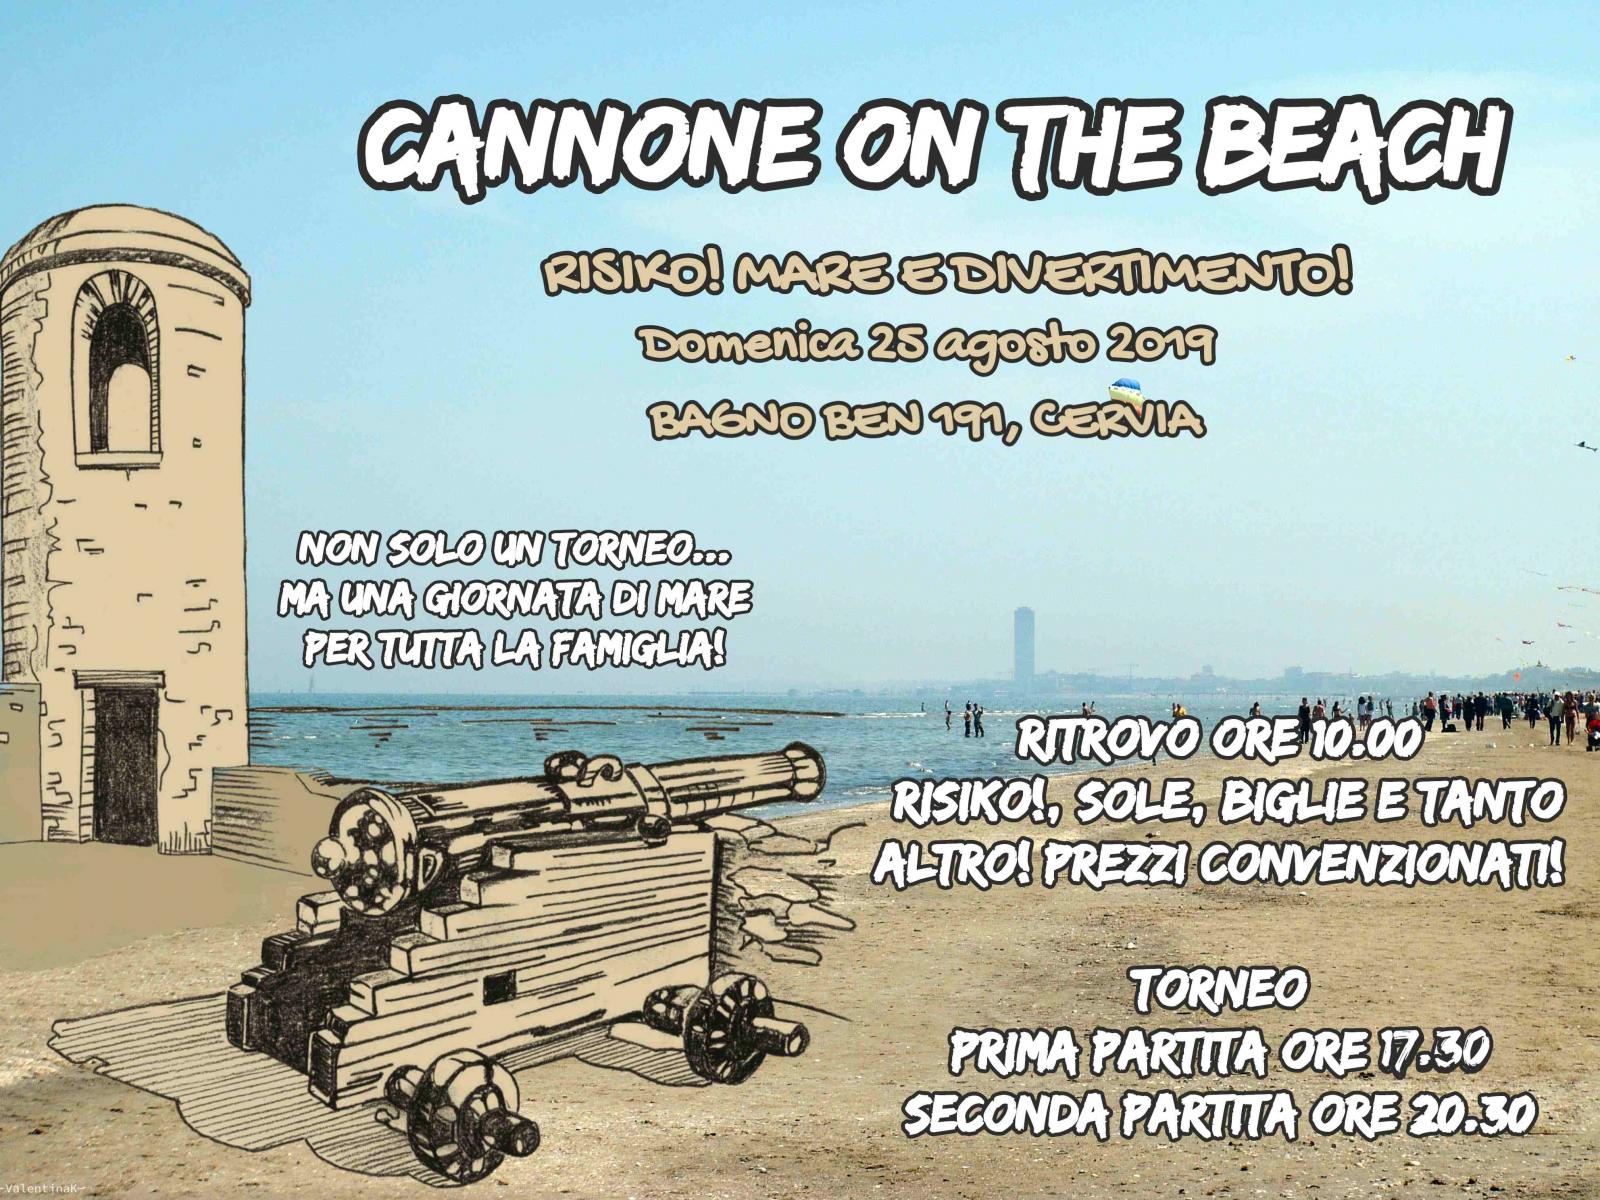 Nome:   Cannone on the Beach 2019 - 25 agosto 2019 (2).jpg
Visite:  177
Grandezza:  340.9 KB